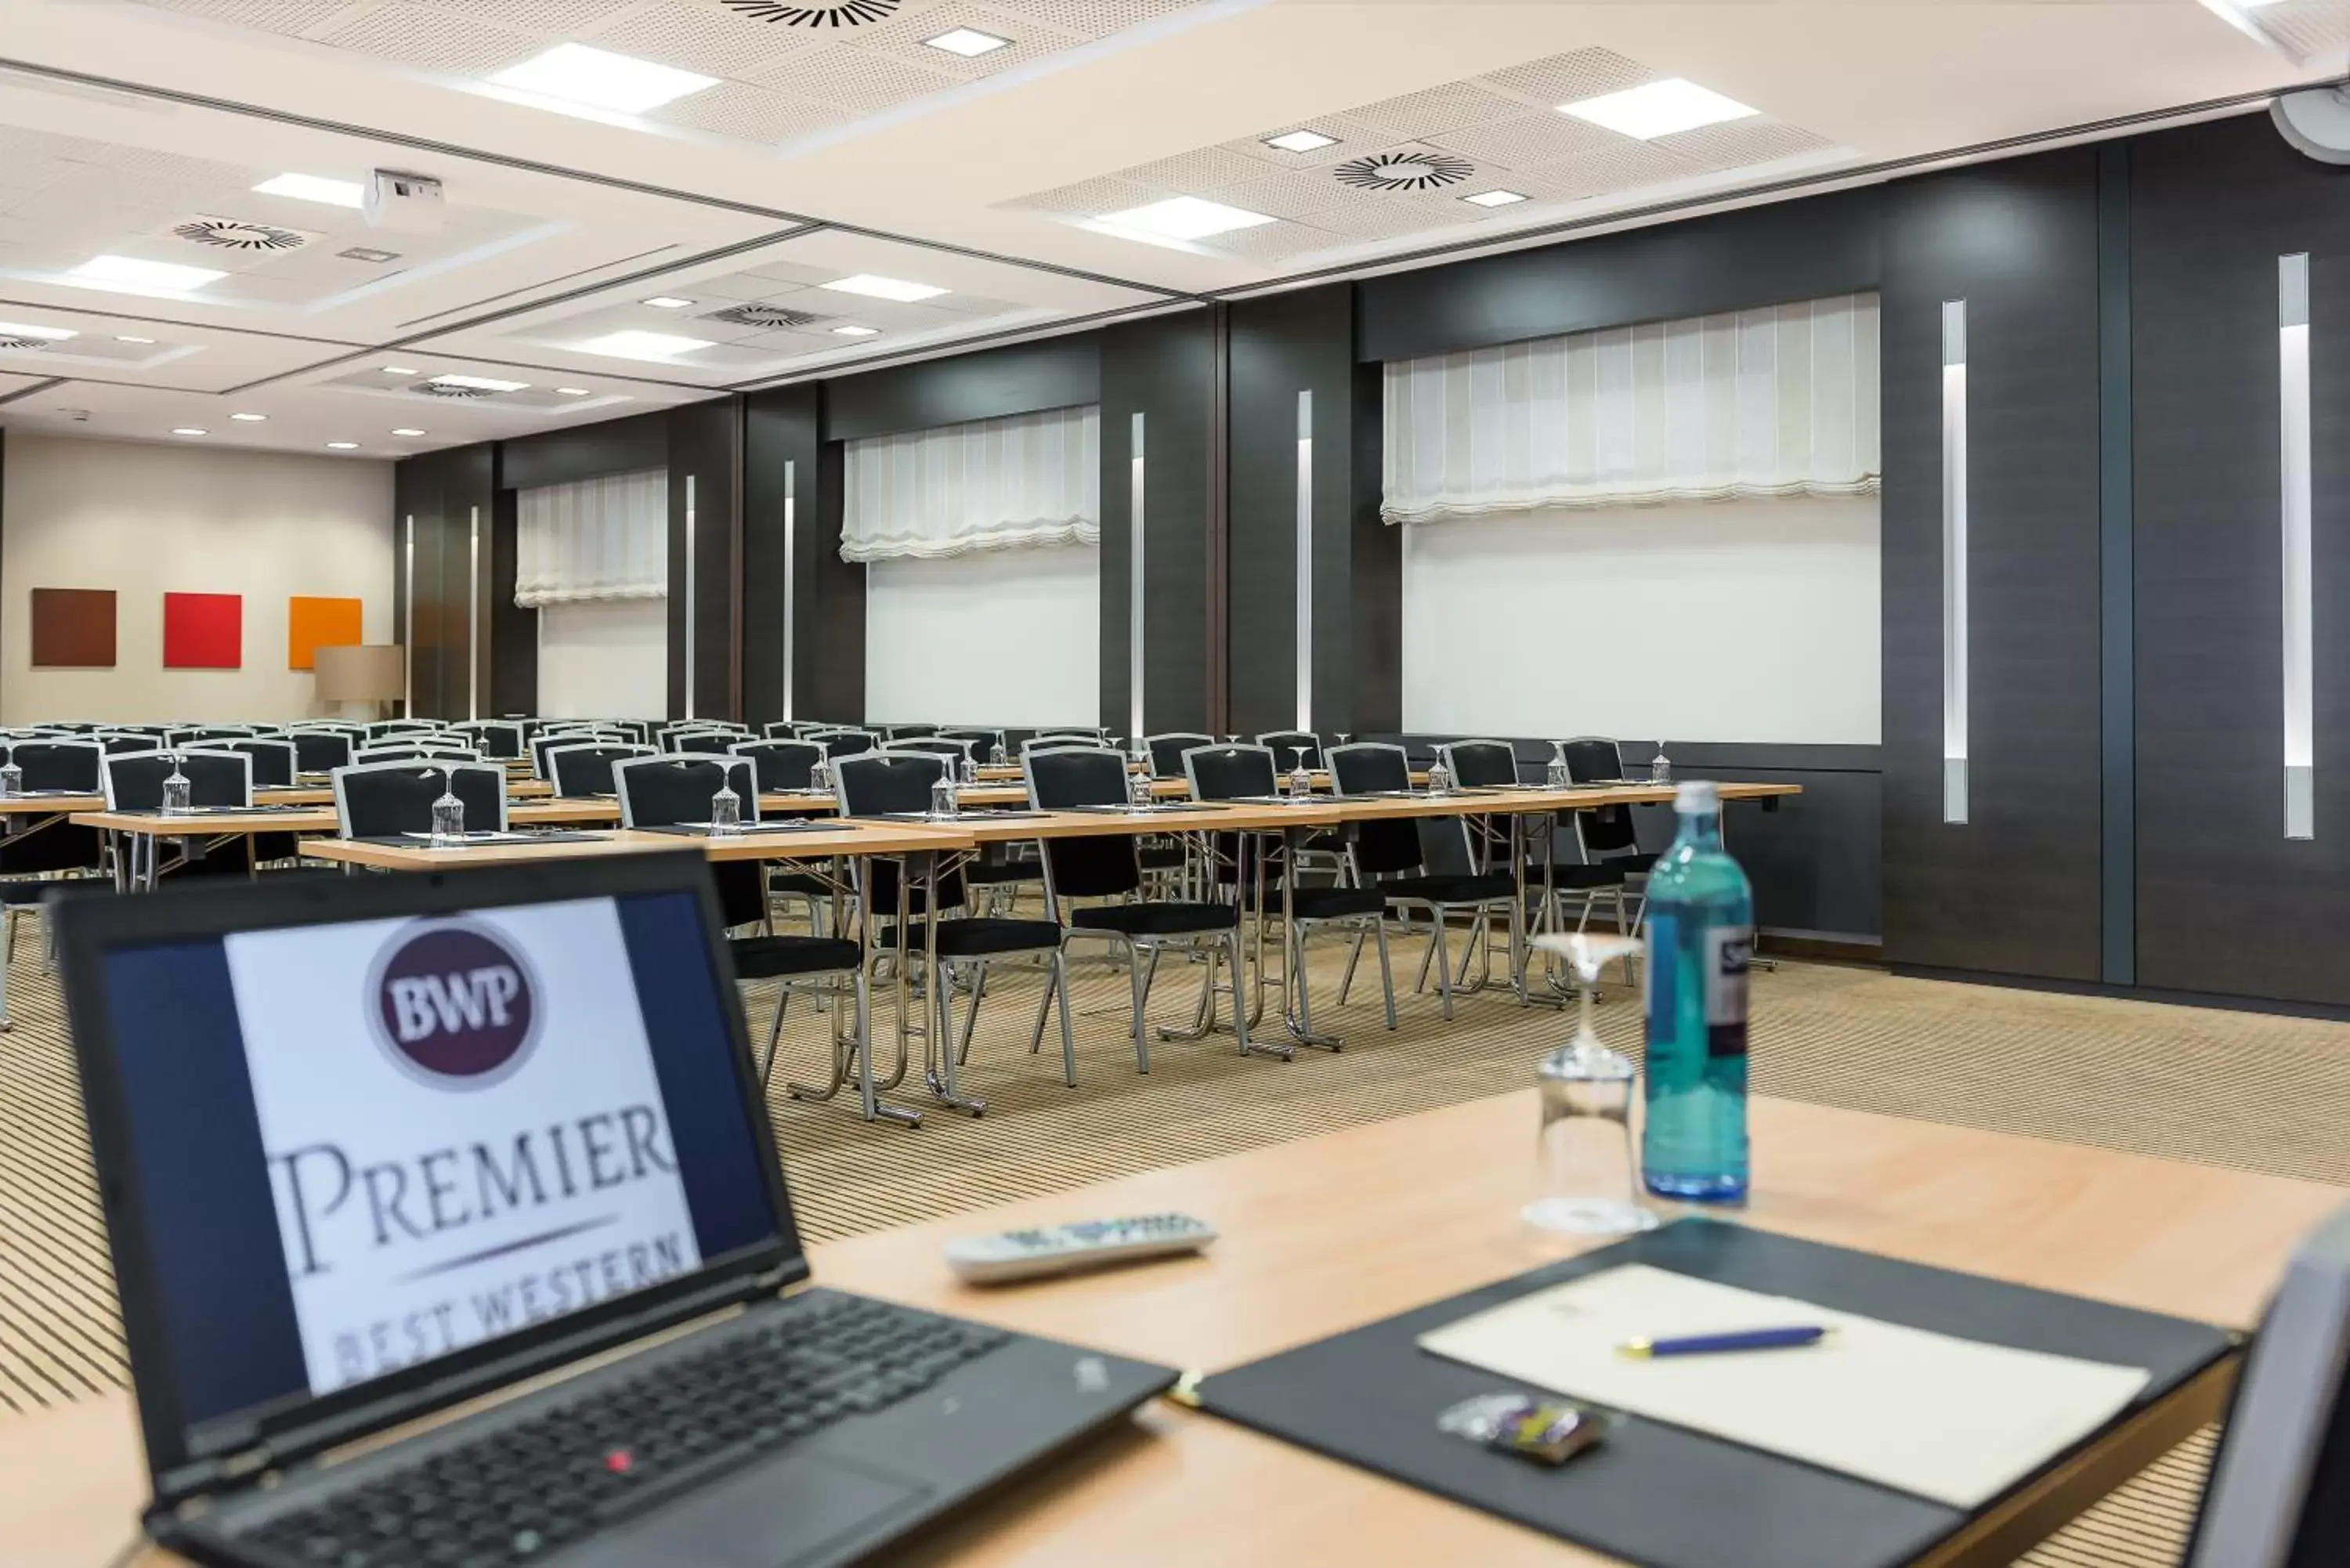 Meeting/conference room, Business Area/Conference Room in Best Western Premier Novina Hotel Regensburg